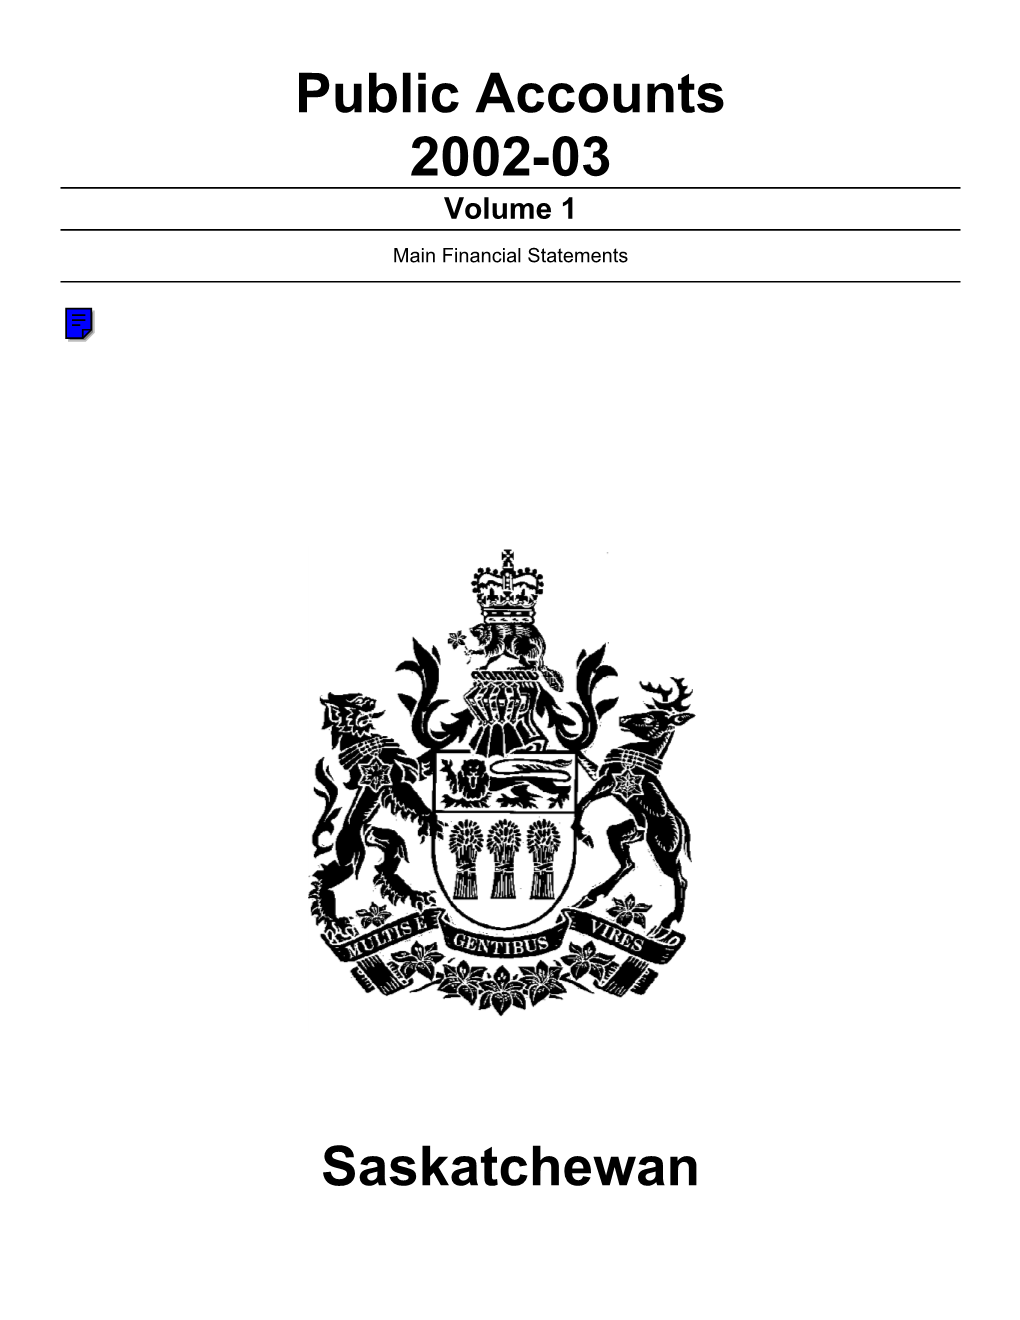 Public Accounts 2002-03 Saskatchewan